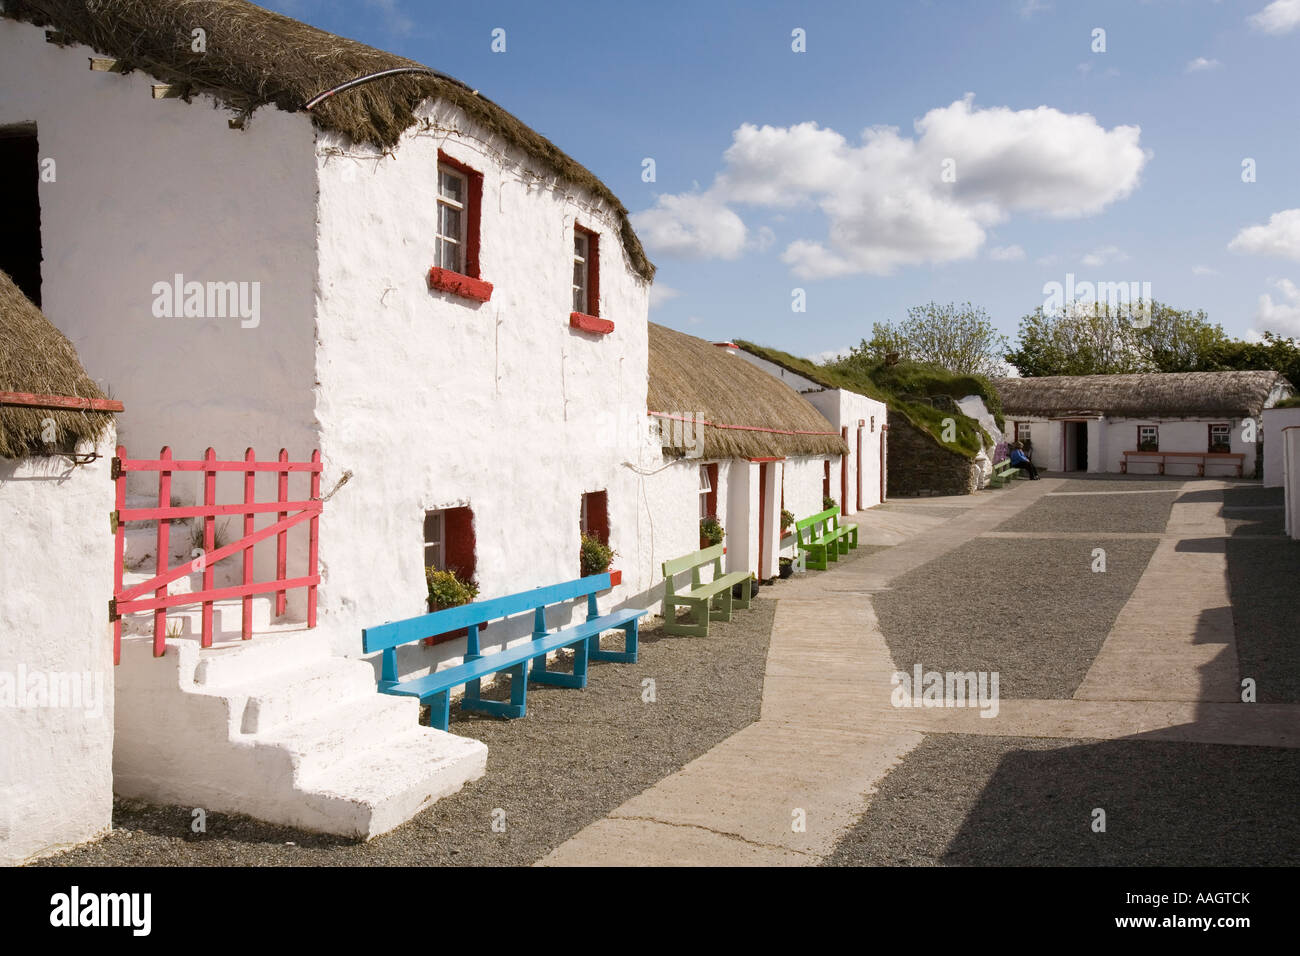 La péninsule d'Inishowen Donegal Irlande Île de Doagh Famine Village 1900 street Banque D'Images